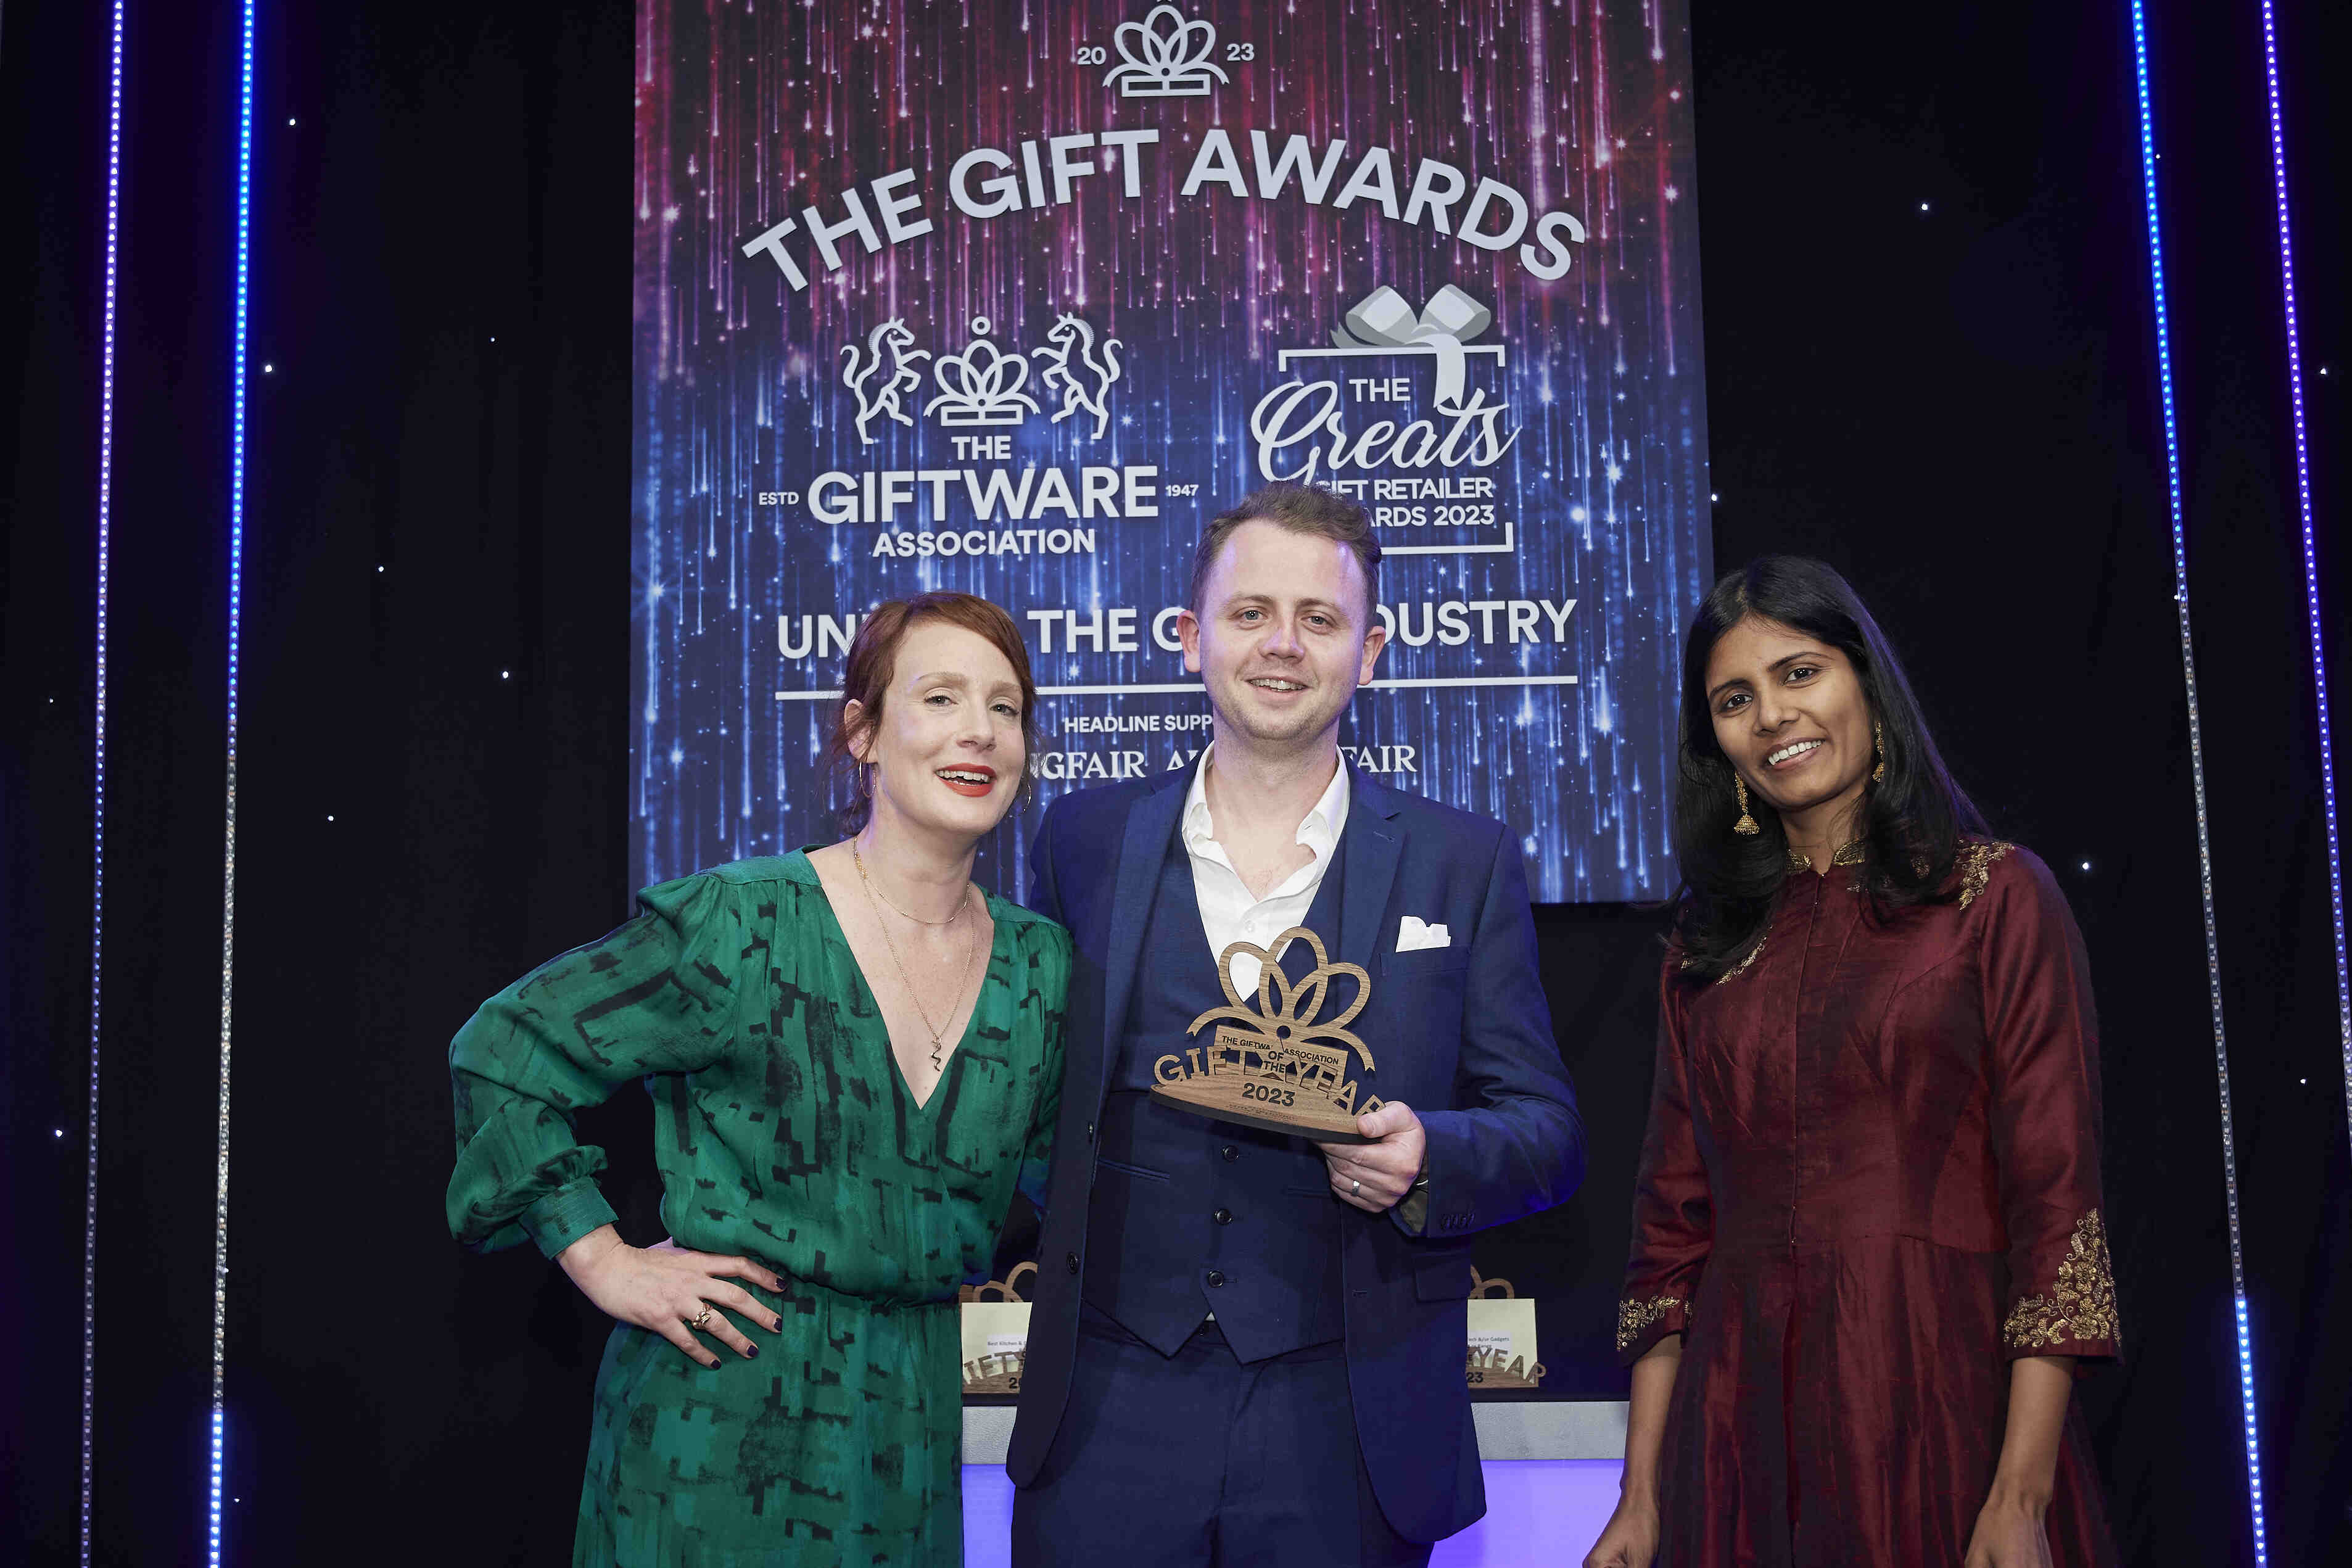 Qalara at the Gift Awards 2023, UK